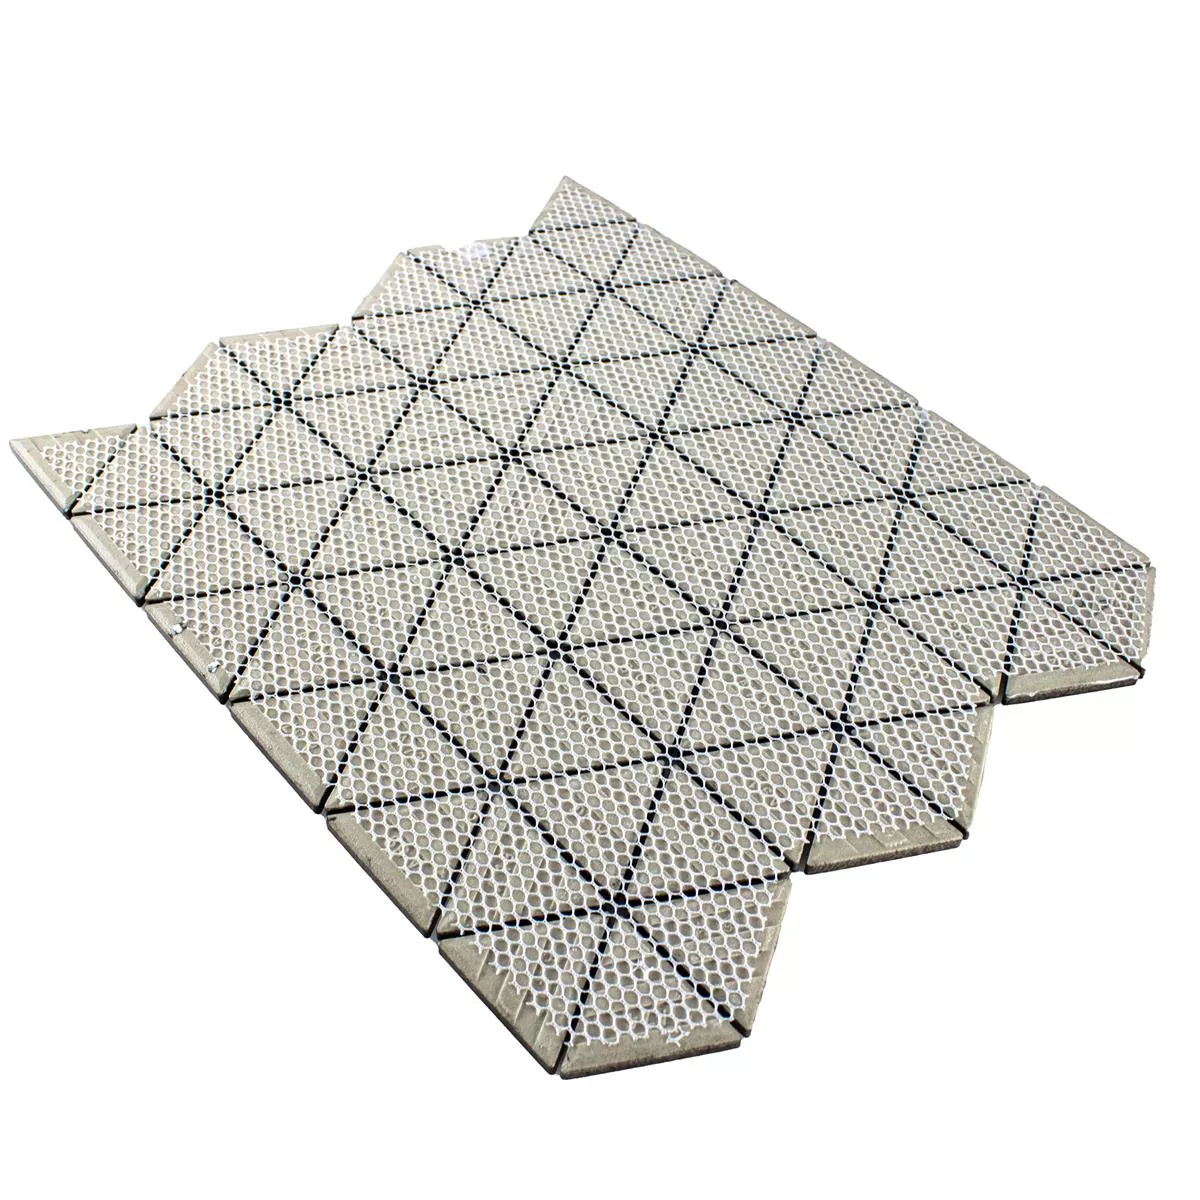 Ceramica Mosaico Arvada Triangolo Bianco Opaco